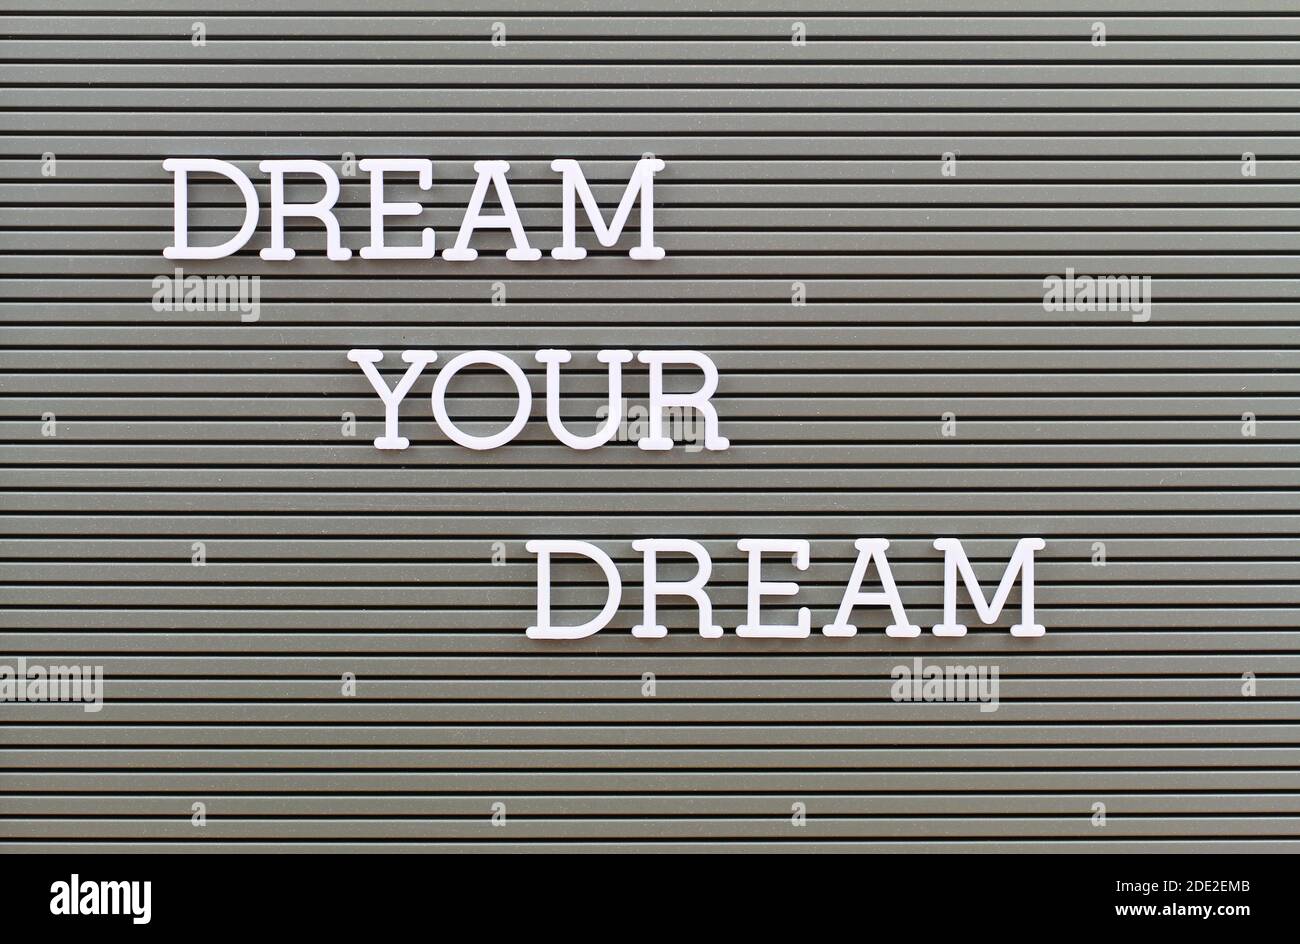 Rêvez votre rêve, texte écrit avec des lettres en plastique blanc sur un plateau métallique Banque D'Images